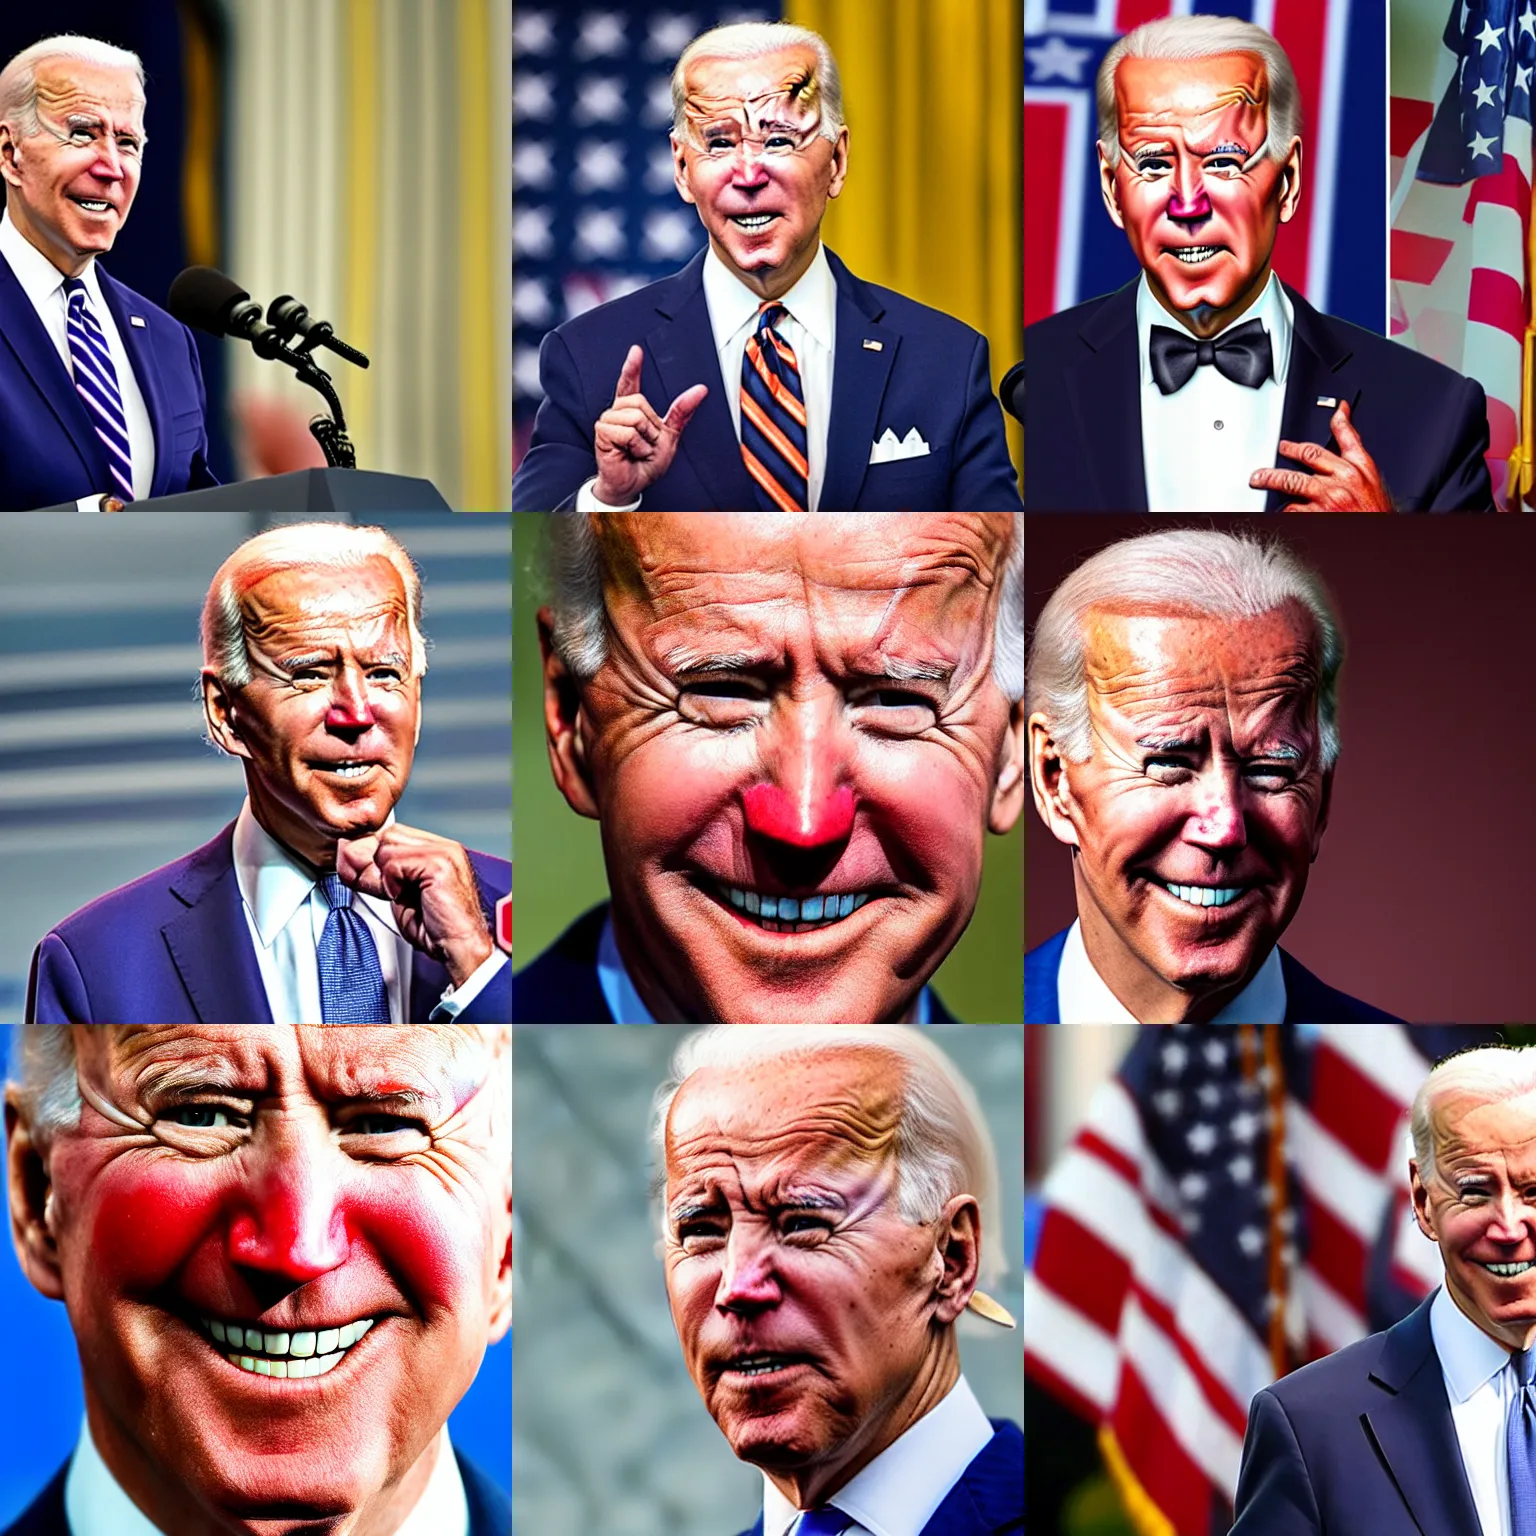 Prompt: Joe Biden with clown makeup